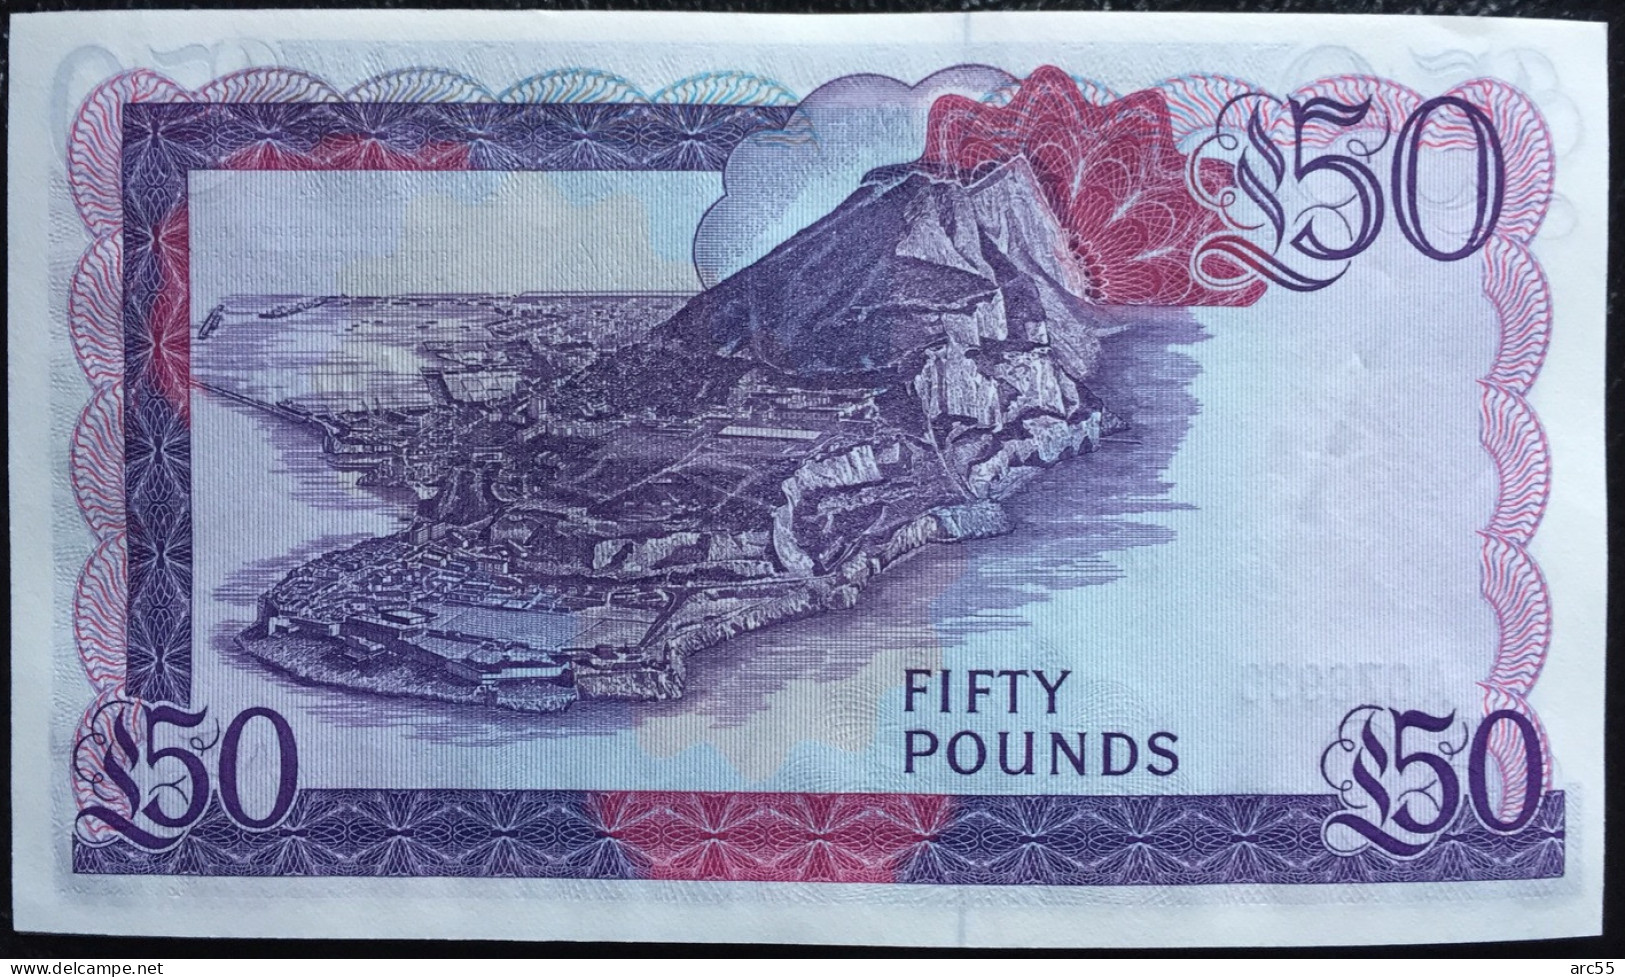 Gibraltar £50 Pounds 1982 UNC Rare Banknote - 50 Pounds